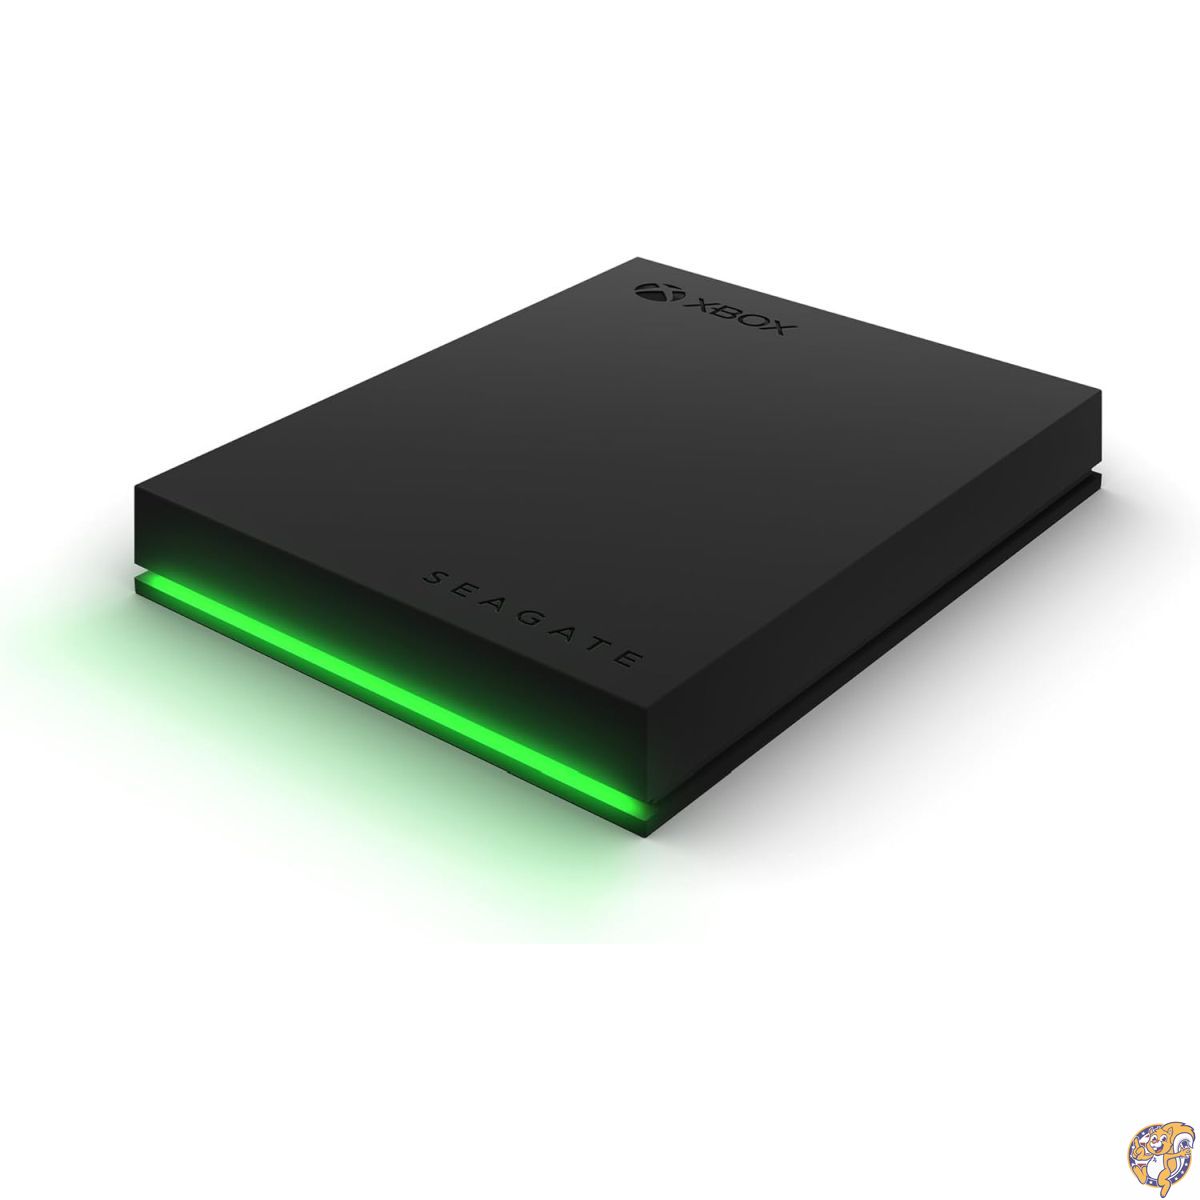 Seagate (シーゲイト) ゲーム用ドライブ Xbox用 4TB 外付け ハードドライブ ポータブル HDD - USB 3.2 Gen 1 ブラック グリーンLEDバー..